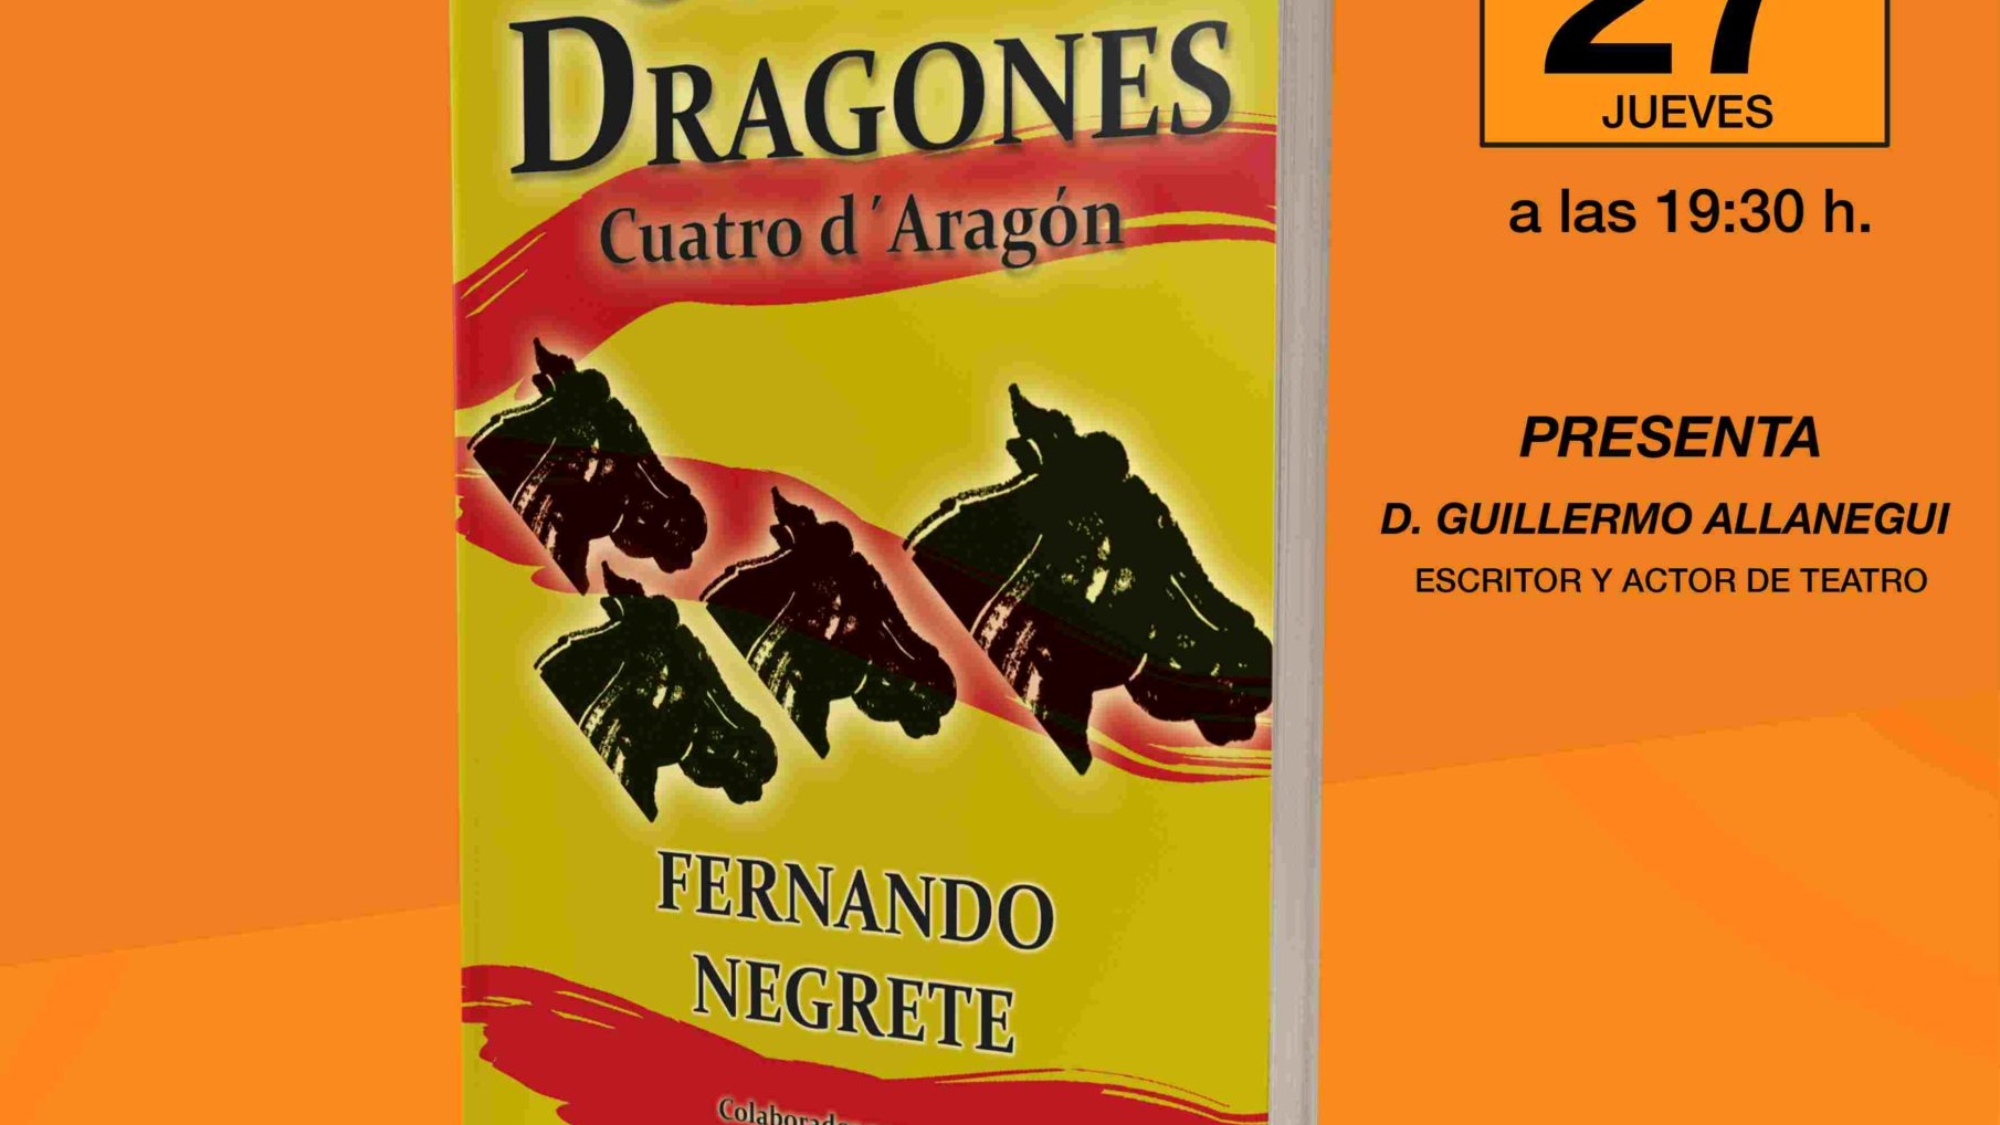 Cartel de presentación de Cuatro dragones (2)-compressed